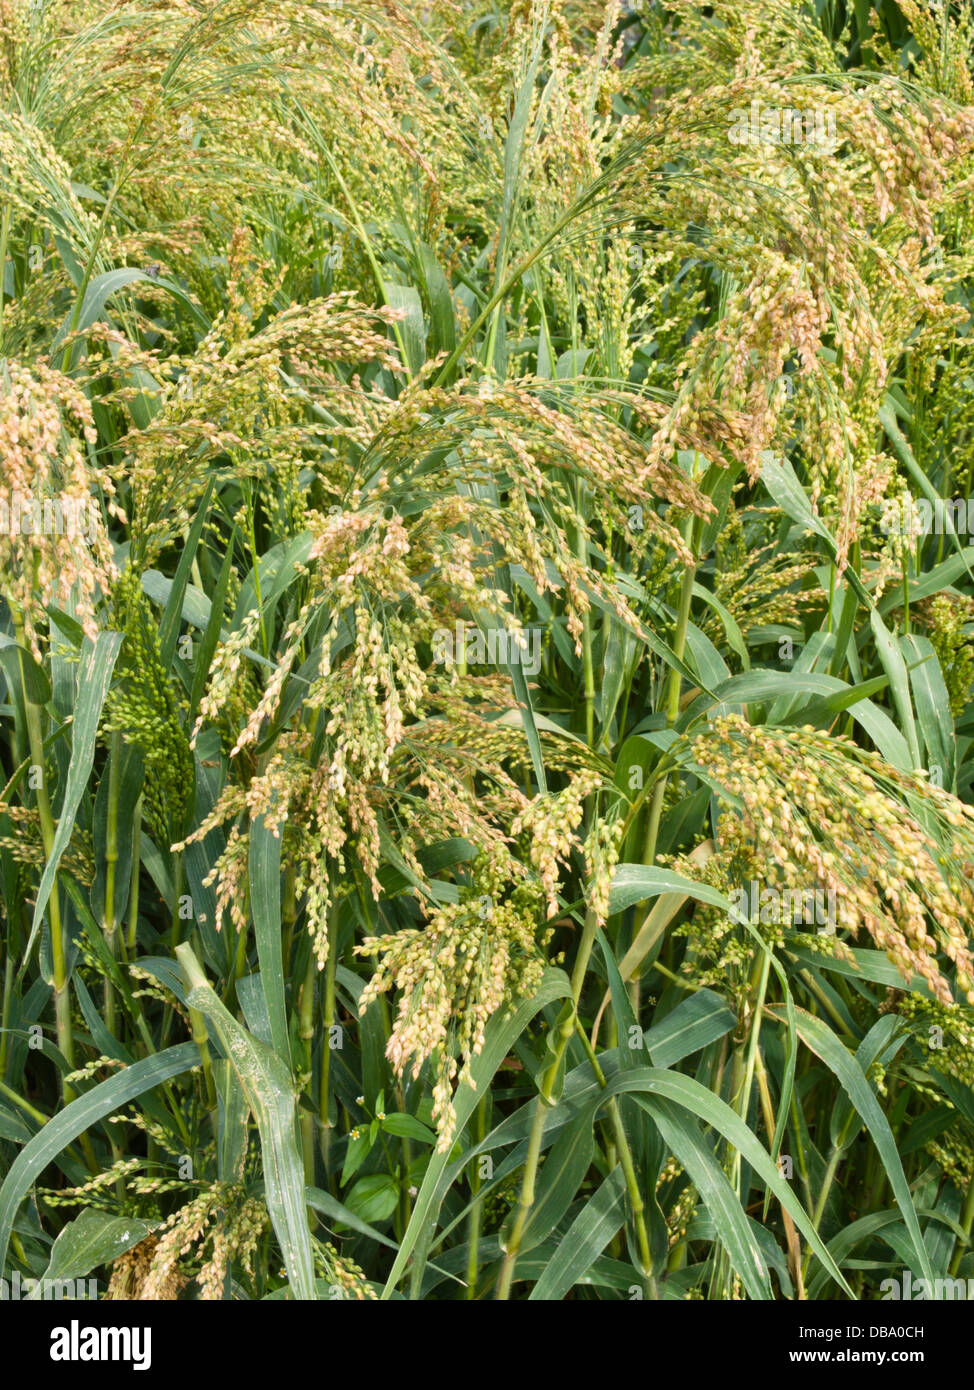 Common millet (Panicum miliaceum 'Alba') Stock Photo